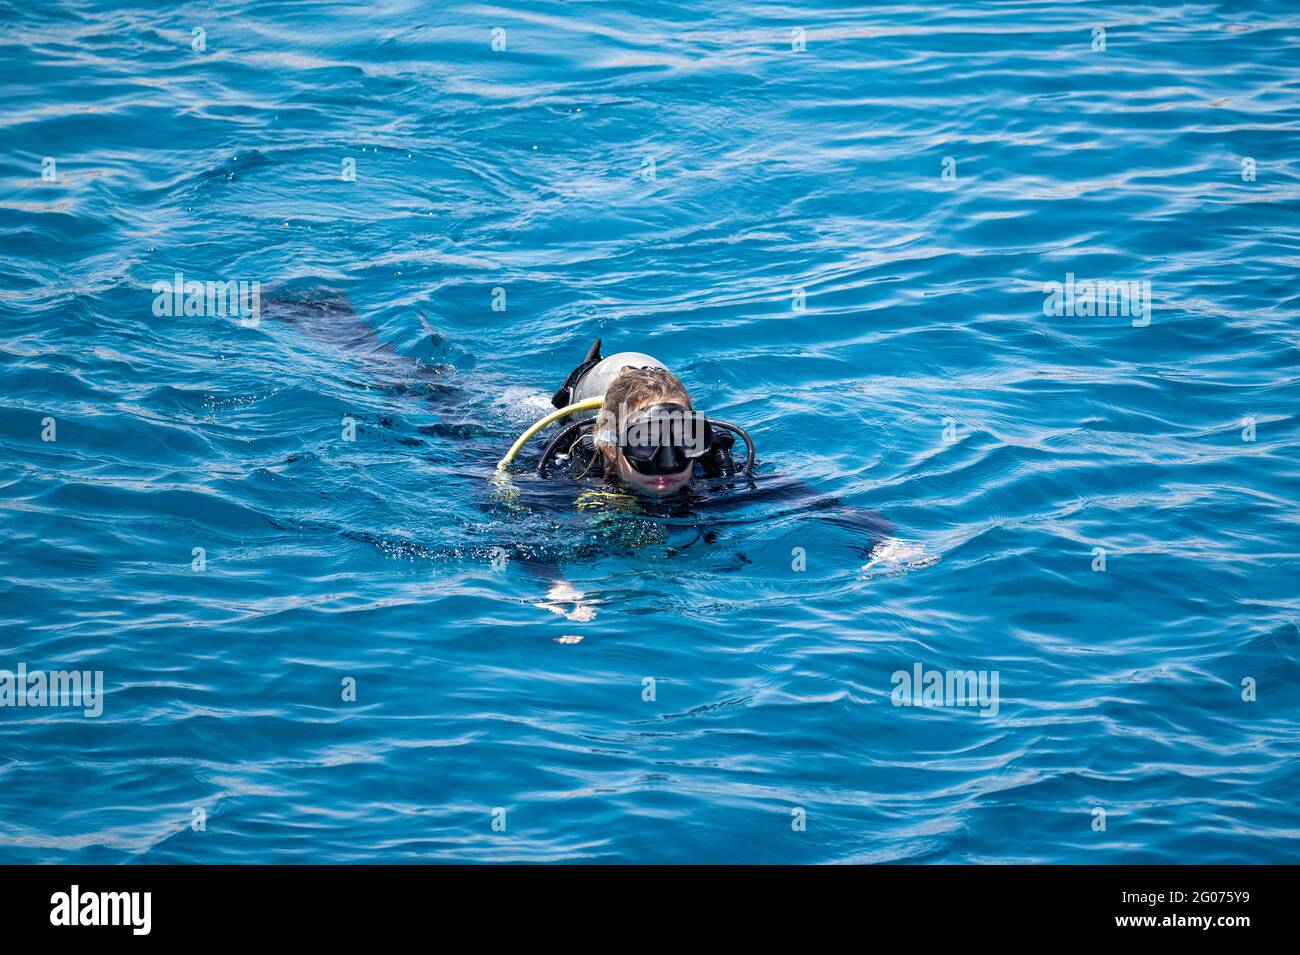 donna in bagno subacqueo sulla superficie blu del mare dopo le immersioni, sport acquatici e divertimento, concetto di immersione subacquea Foto Stock